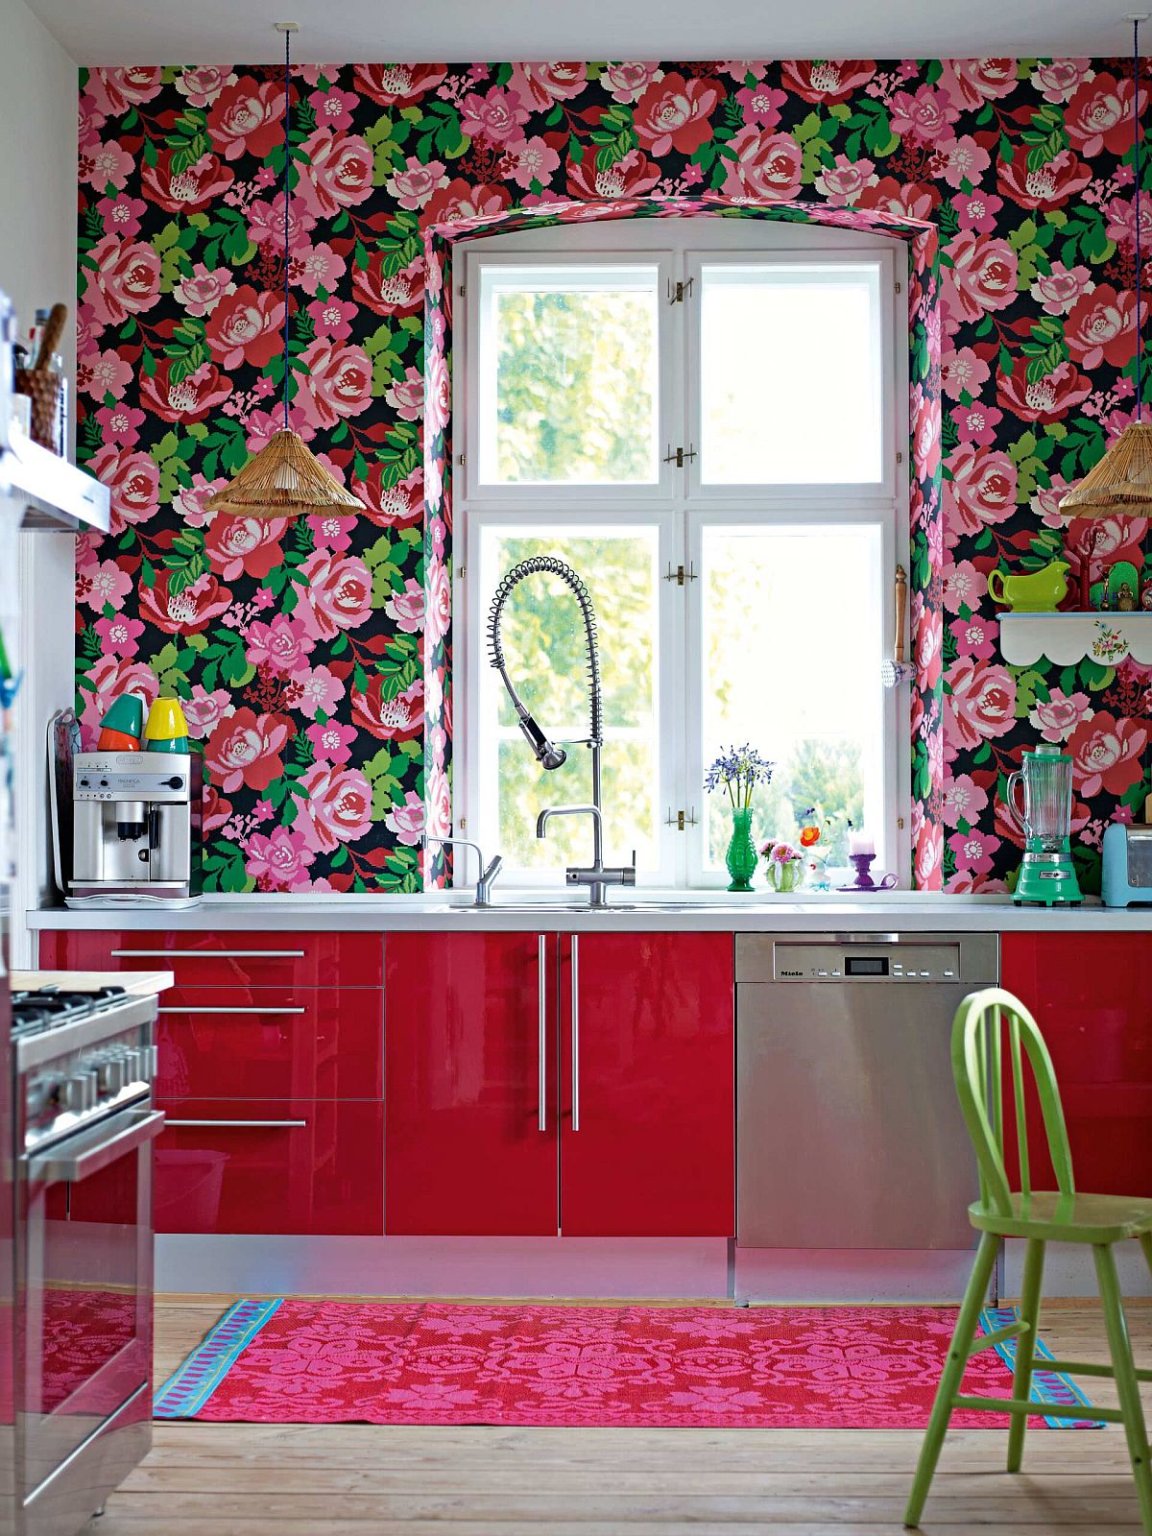 Hình ảnh một góc phòng bếp cực ấn tượng với giấy dán tường họa tiết hoa hồng lớn bao quanh khung cửa sổ, tủ bếp màu đỏ cùng tông với thảm chùi chân